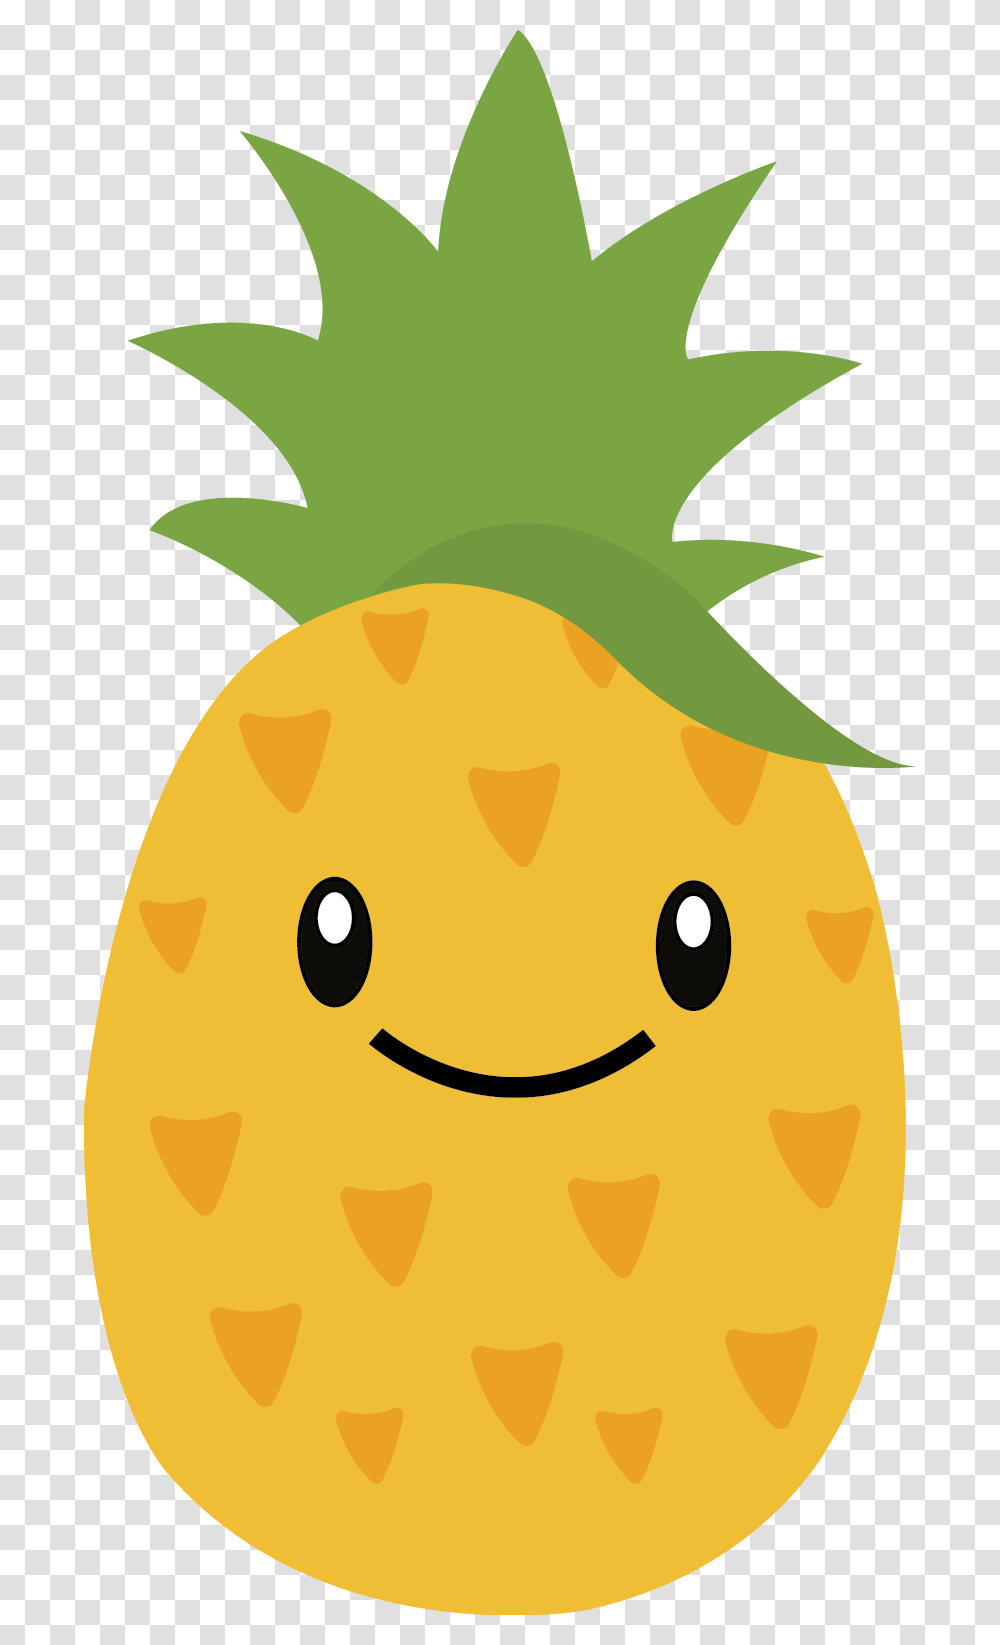 Pineapple Face Clipart, Plant, Food, Fruit, Citrus Fruit Transparent Png